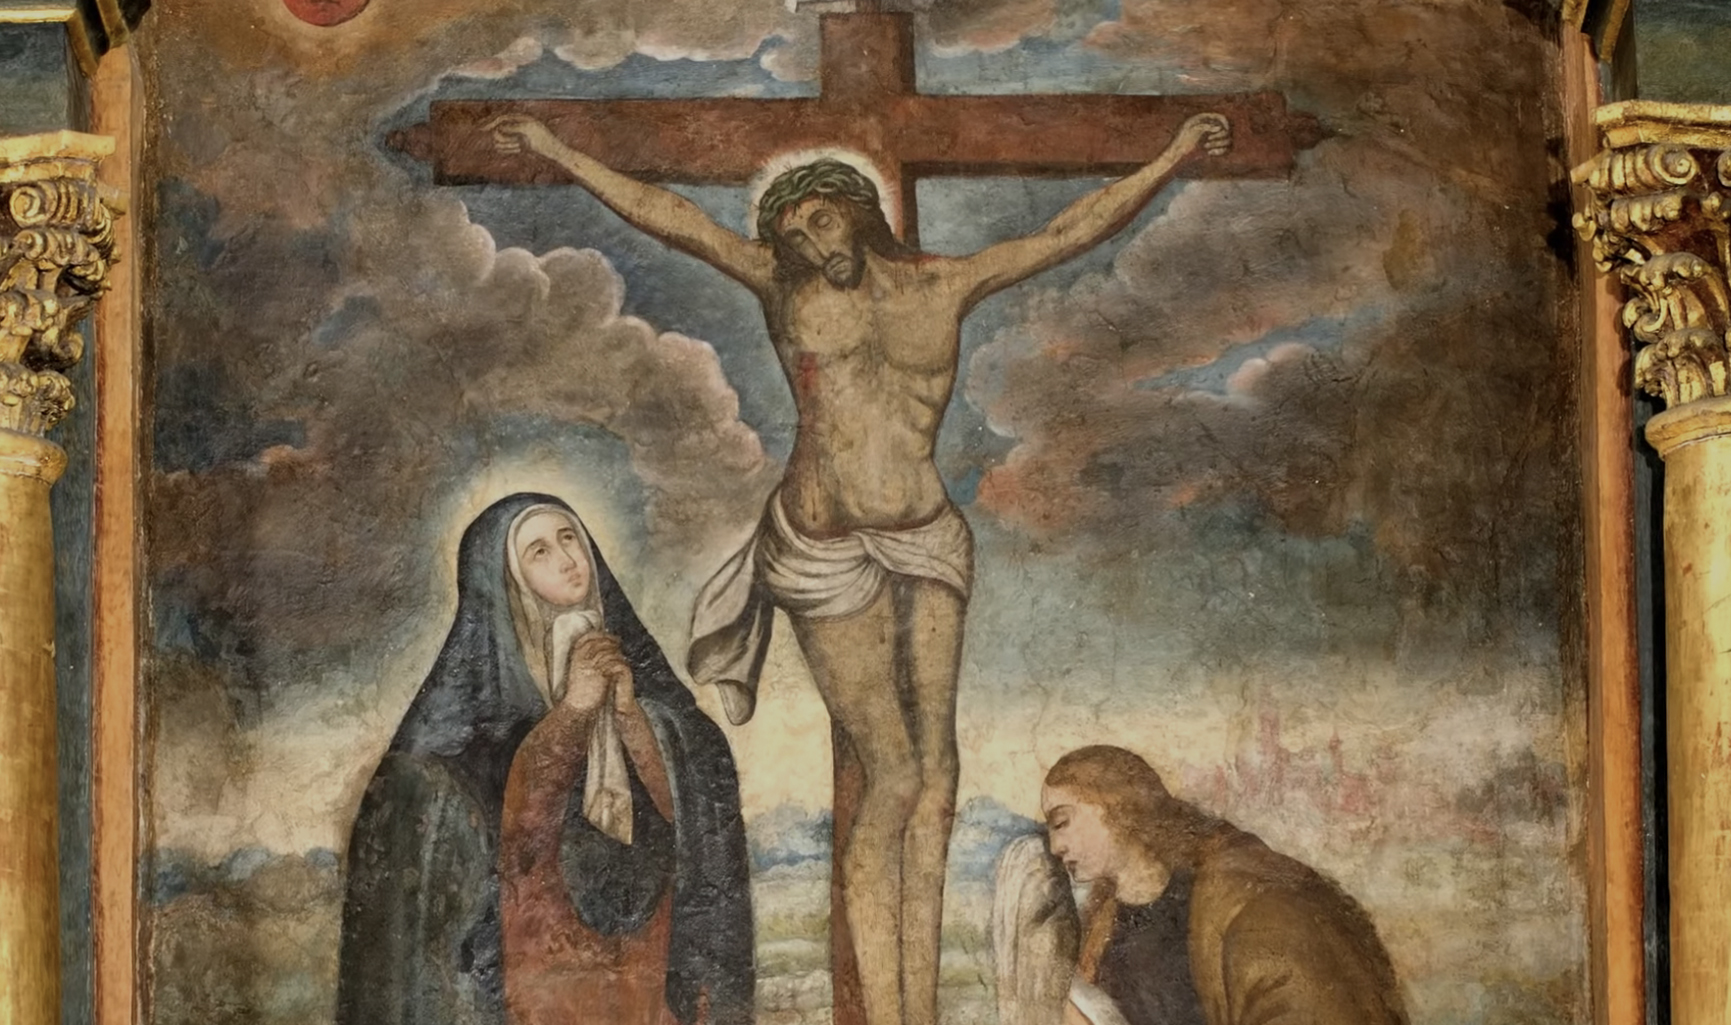 La pasión y muerte de Jesús: ¿Qué sentido tiene? - Arzobispado de Lima